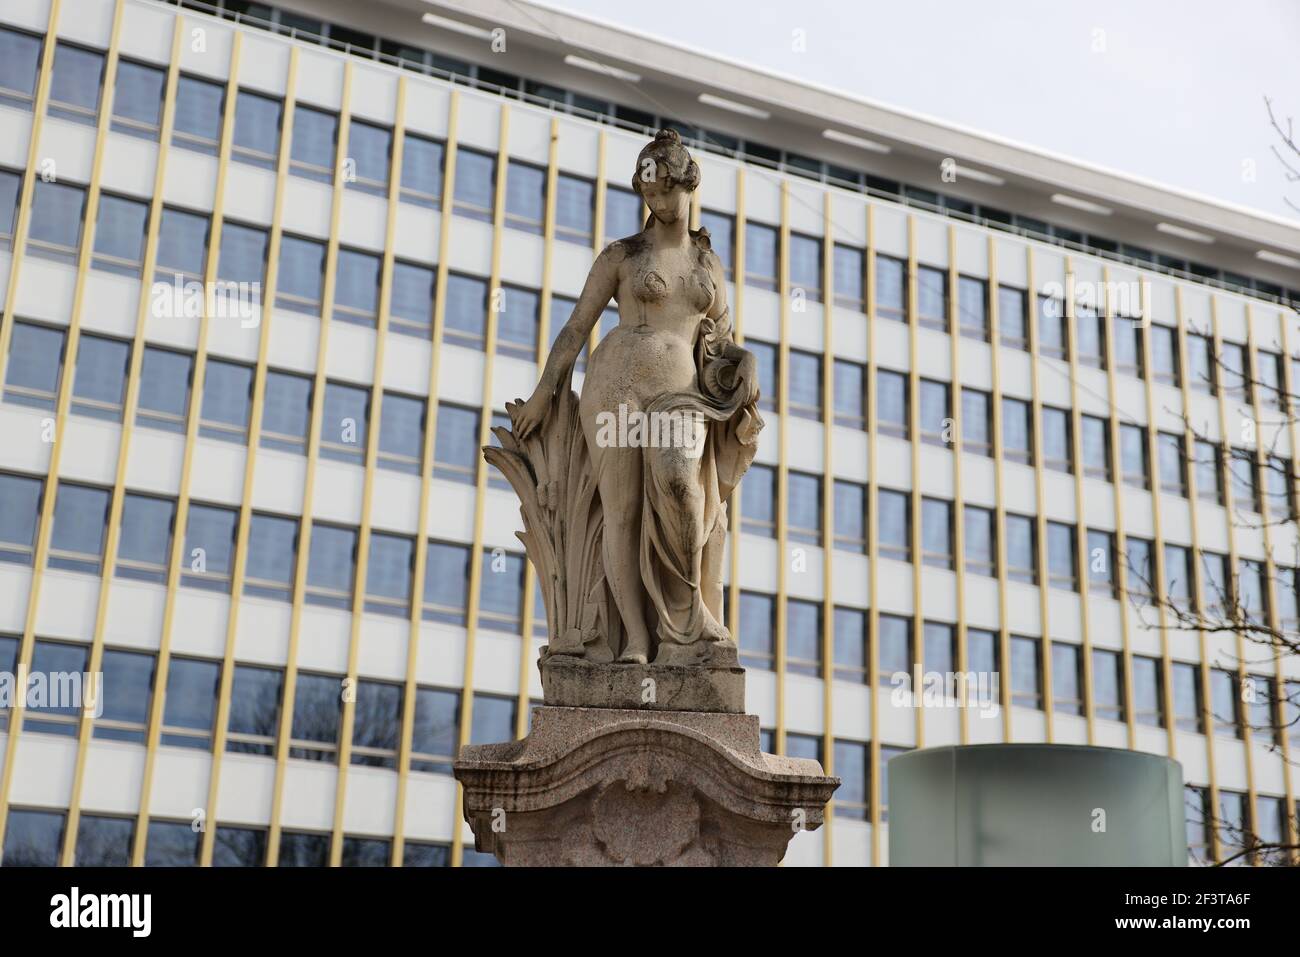 statue de femme en grès brun antique devant le gratte-ciel, idéale pour les compositions photographiques Banque D'Images